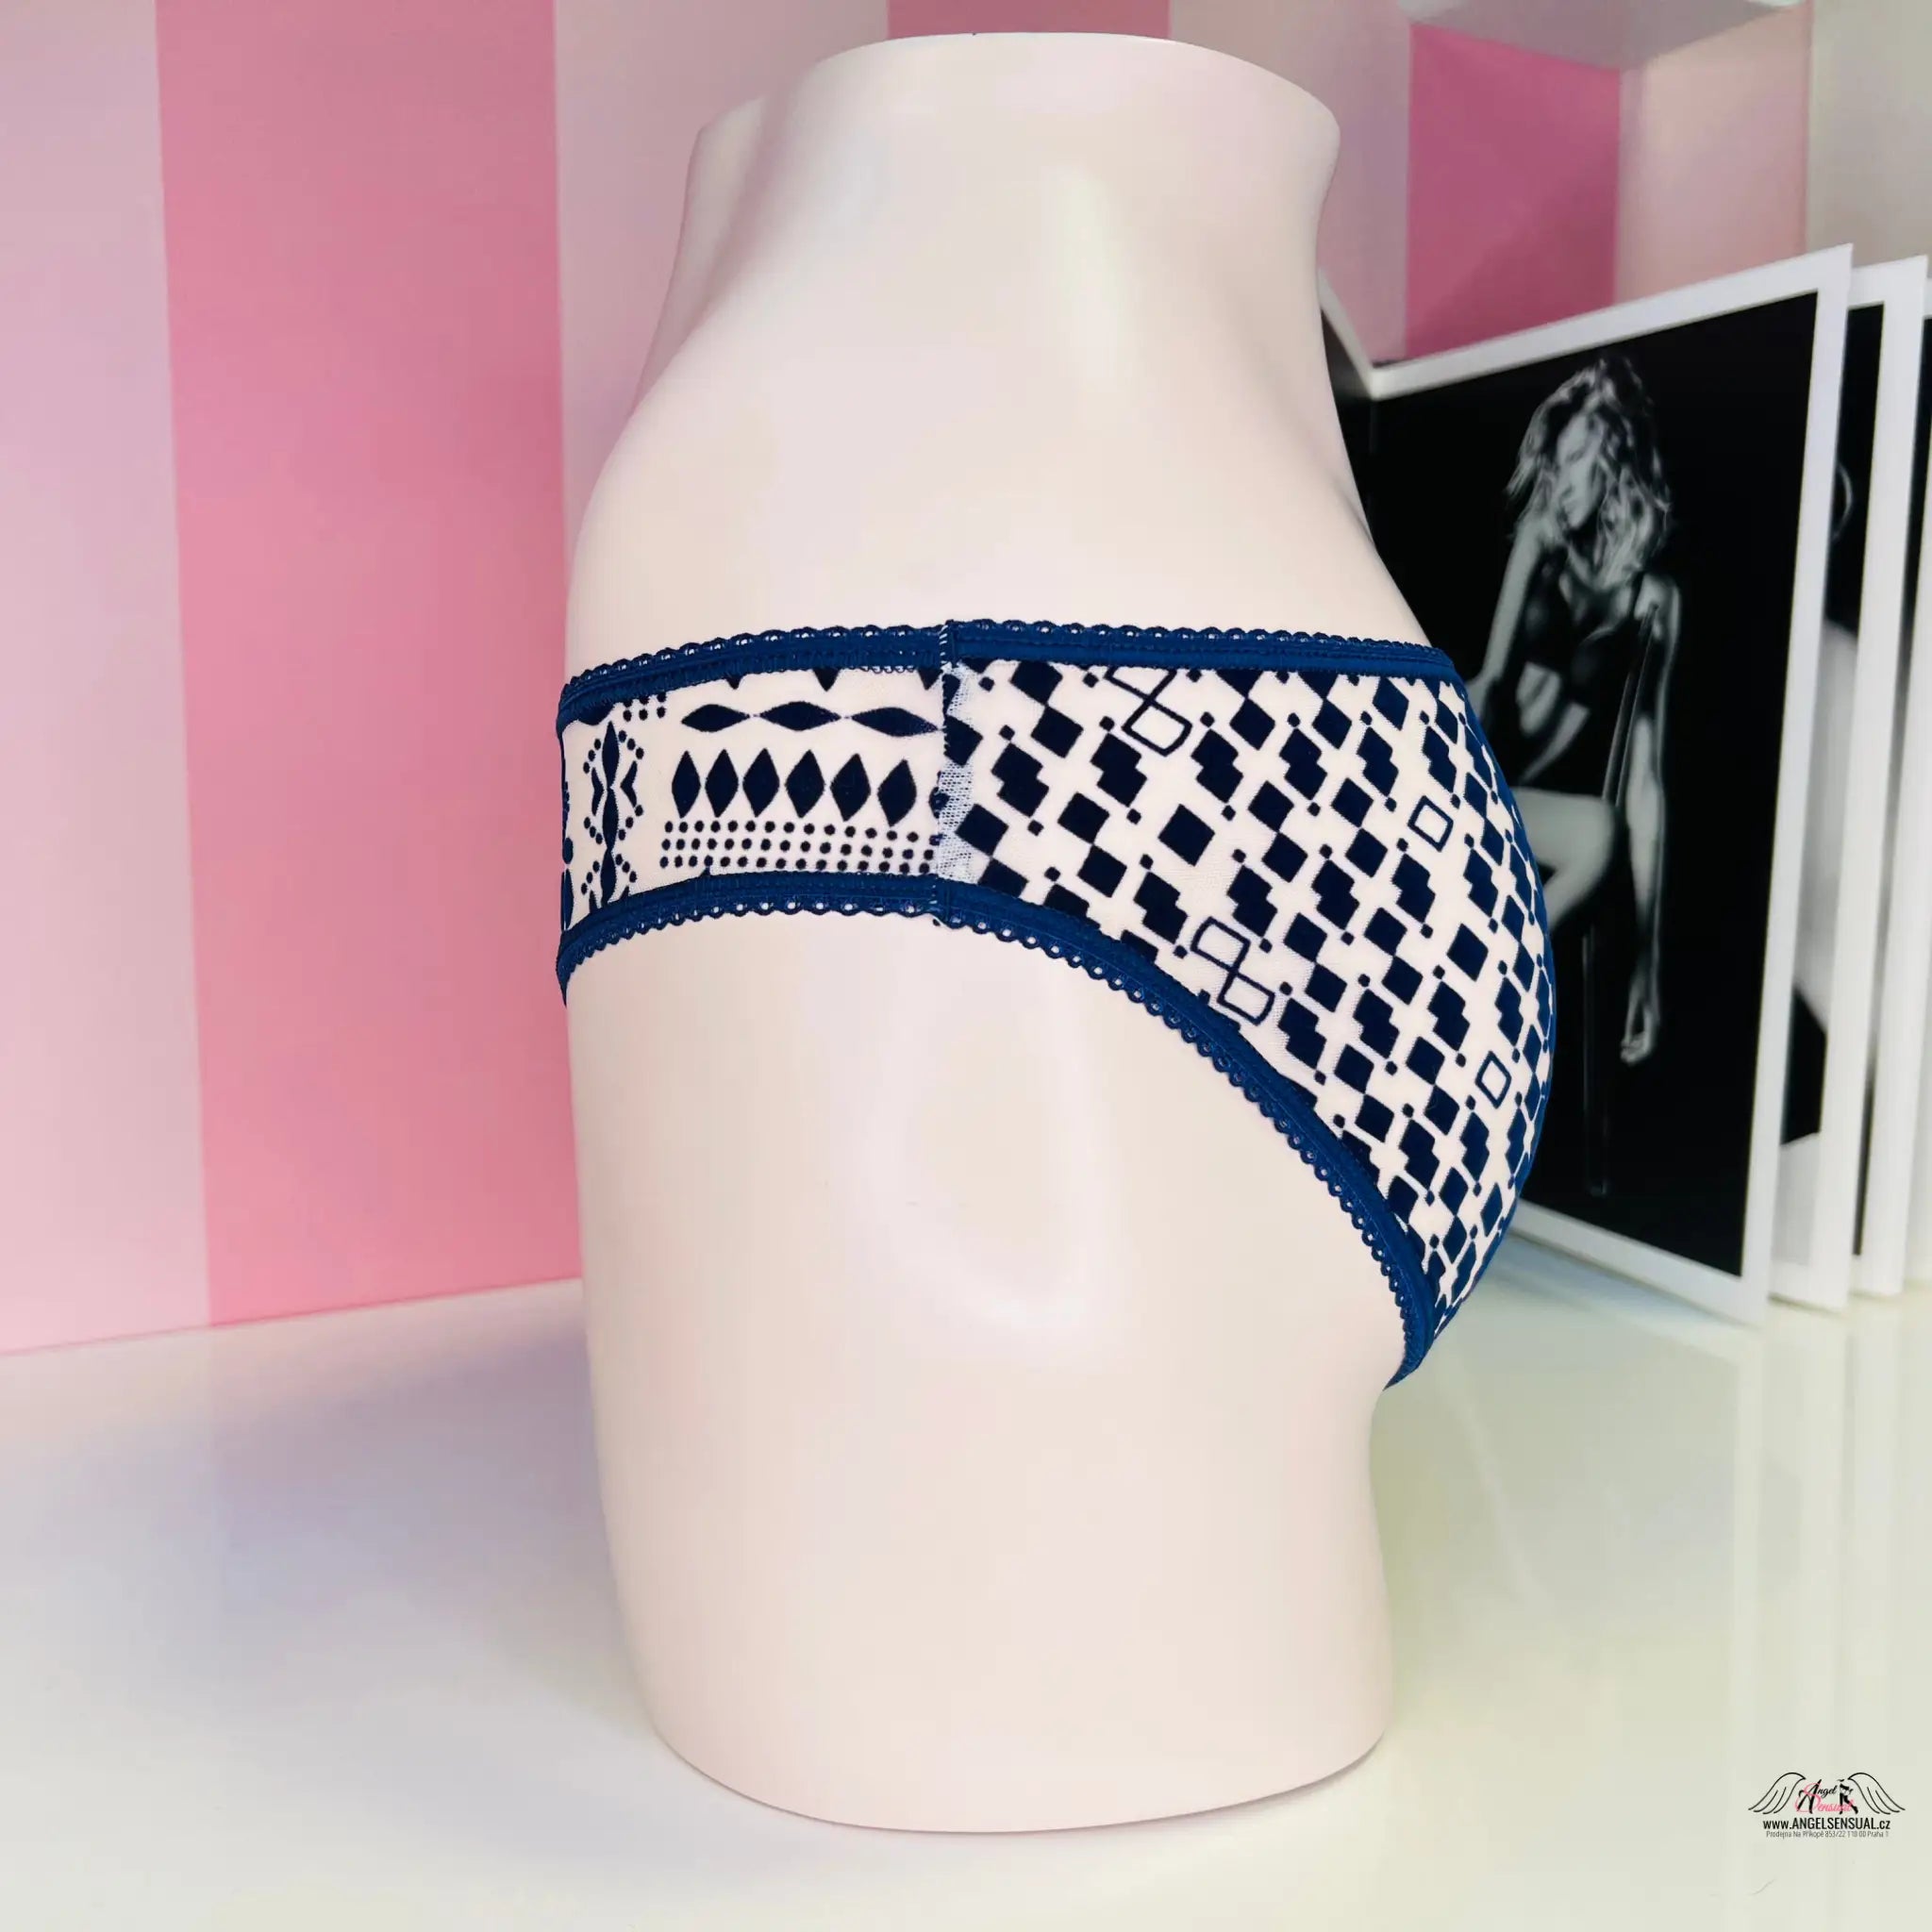 Síťované kalhotky s ornamenty - XS / Modrá / Nové se štítky - Kalhotky Victoria’s Secret